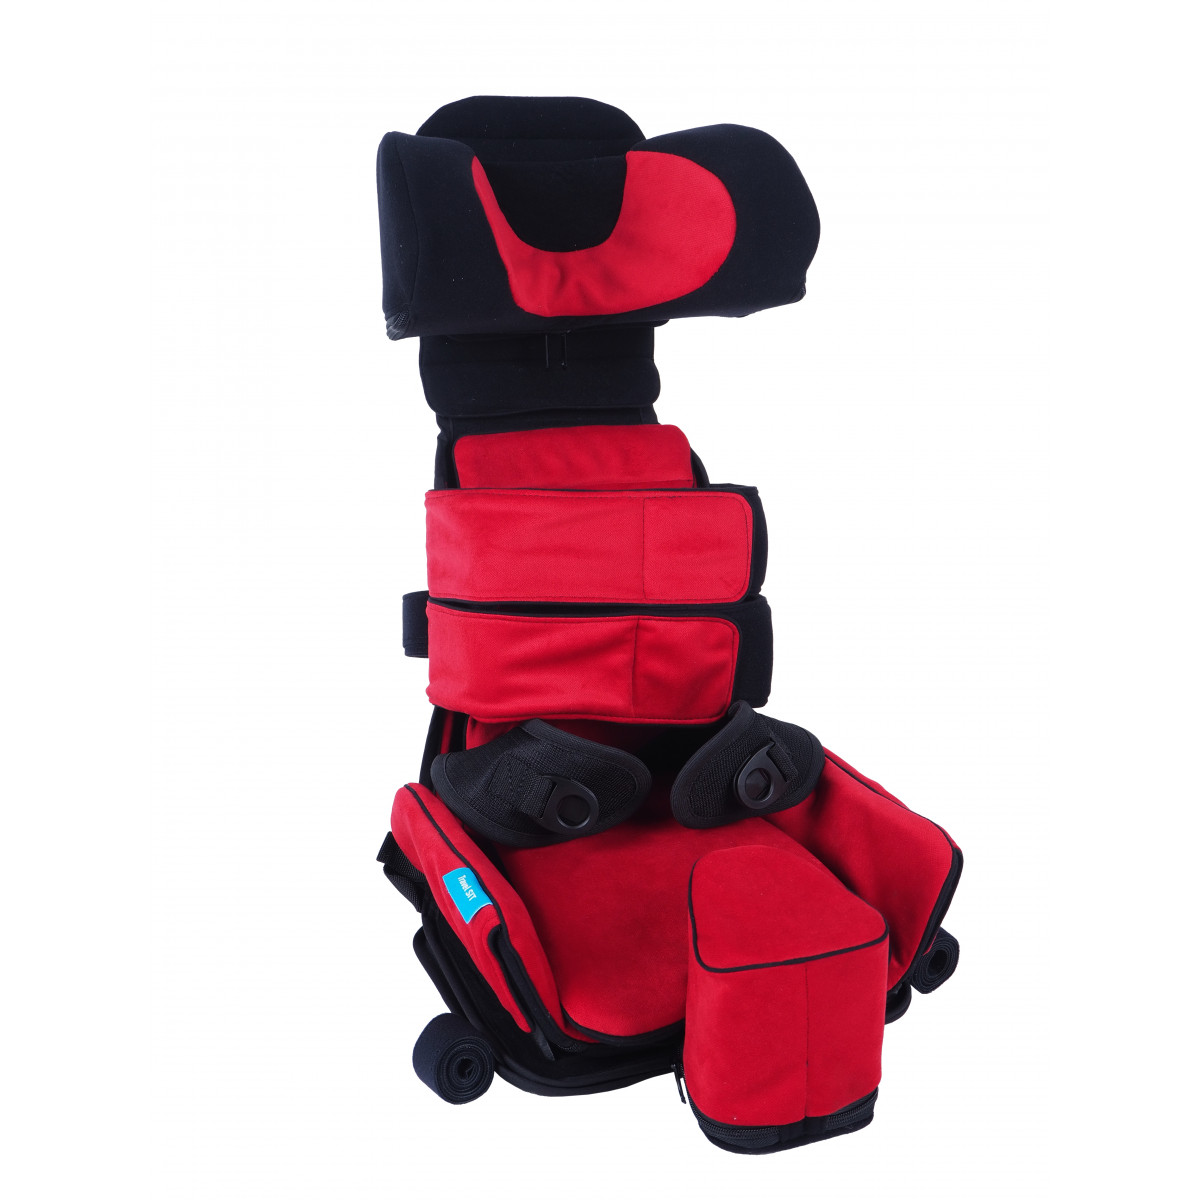 Сиденье для детей дцп. Детское ортопедическое кресло ДЦП Travel sit LIW C. Ортопедическое сиденье Inno sit. Многофункциональное кресло для детей с ДЦП. Опора для сидения для детей с ДЦП.